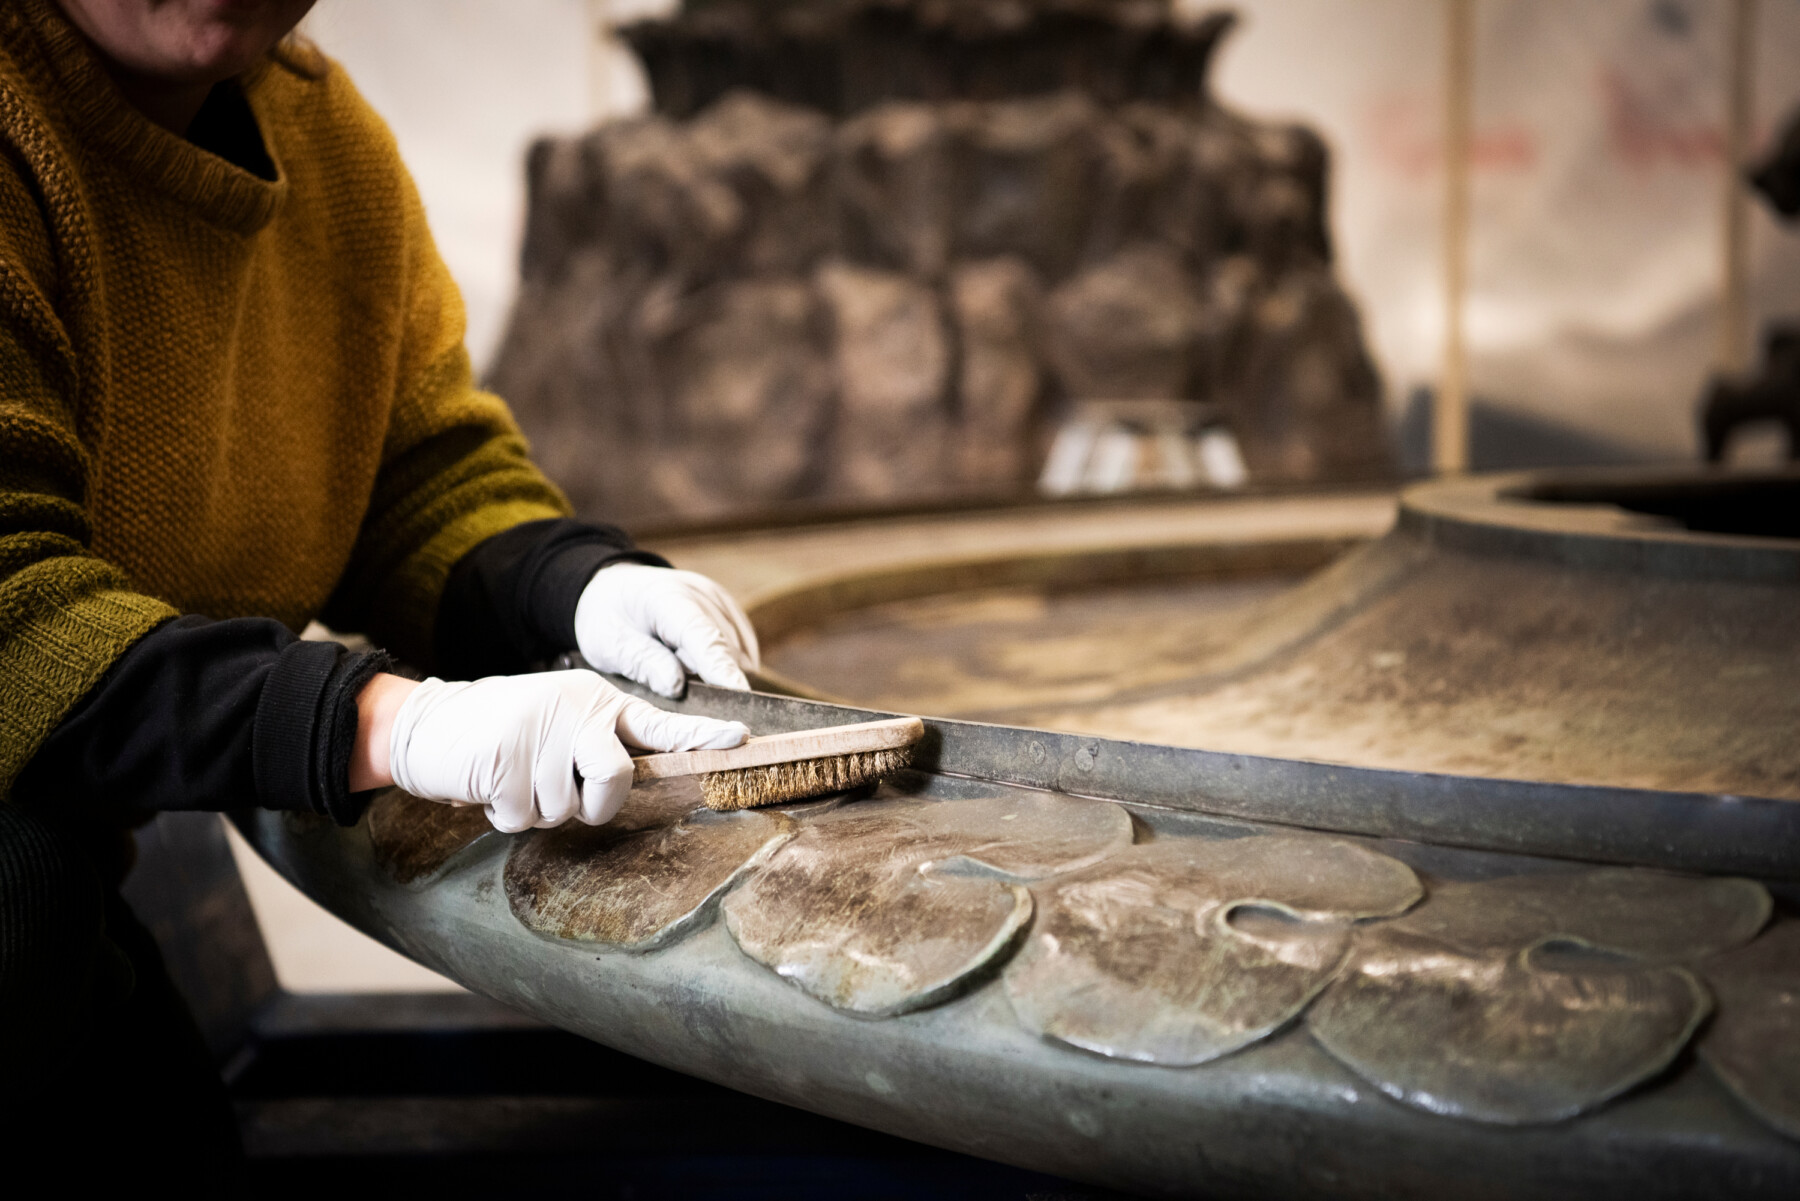 Un gros plan présente deux mains gantées en train d’utiliser une brosse pour nettoyer les motifs en forme de feuilles présents autour d'une partie de la base d'une sculpture en métal. 